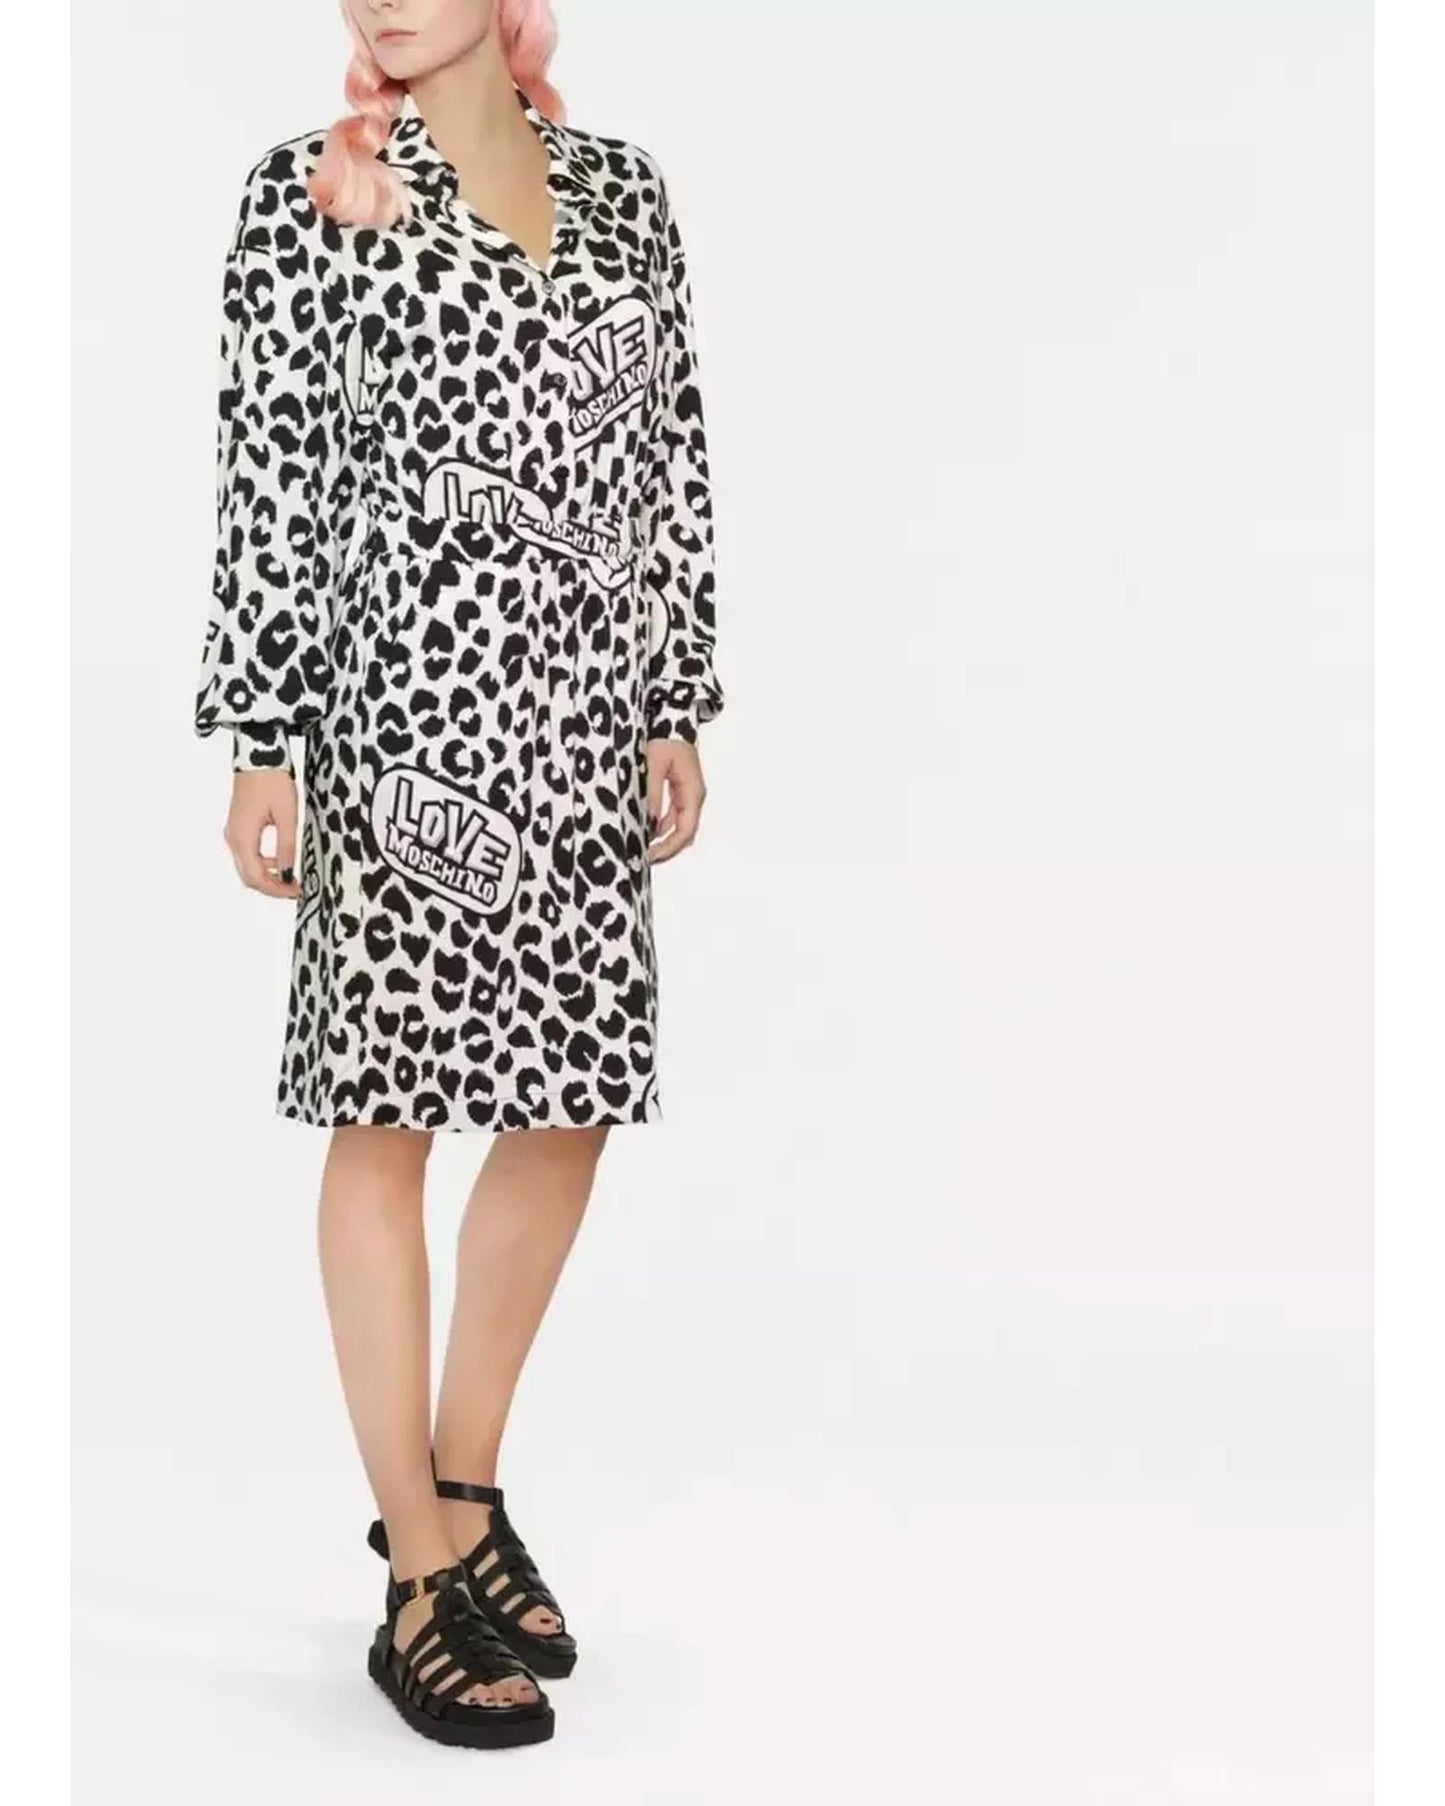 Love Moschino Leopard Texture Logo Dress 42 IT Women